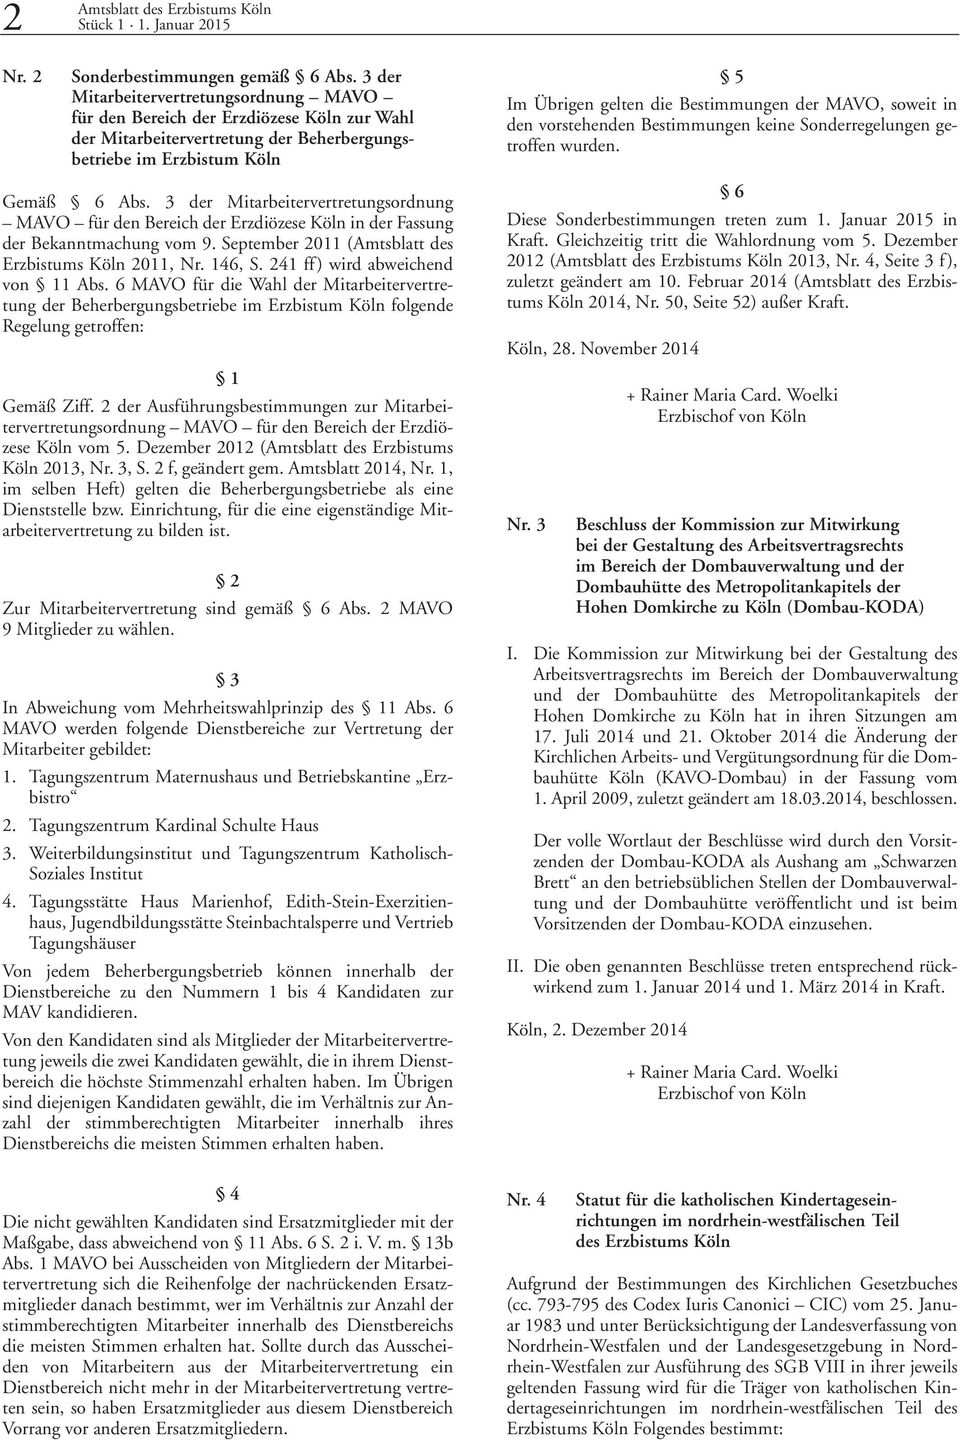 3 der Mitarbeitervertretungsordnung MAVO für den Bereich der Erzdiözese Köln in der Fassung der Bekanntmachung vom 9. September 2011 (Amtsblatt des Erzbistums Köln 2011, Nr. 146, S.